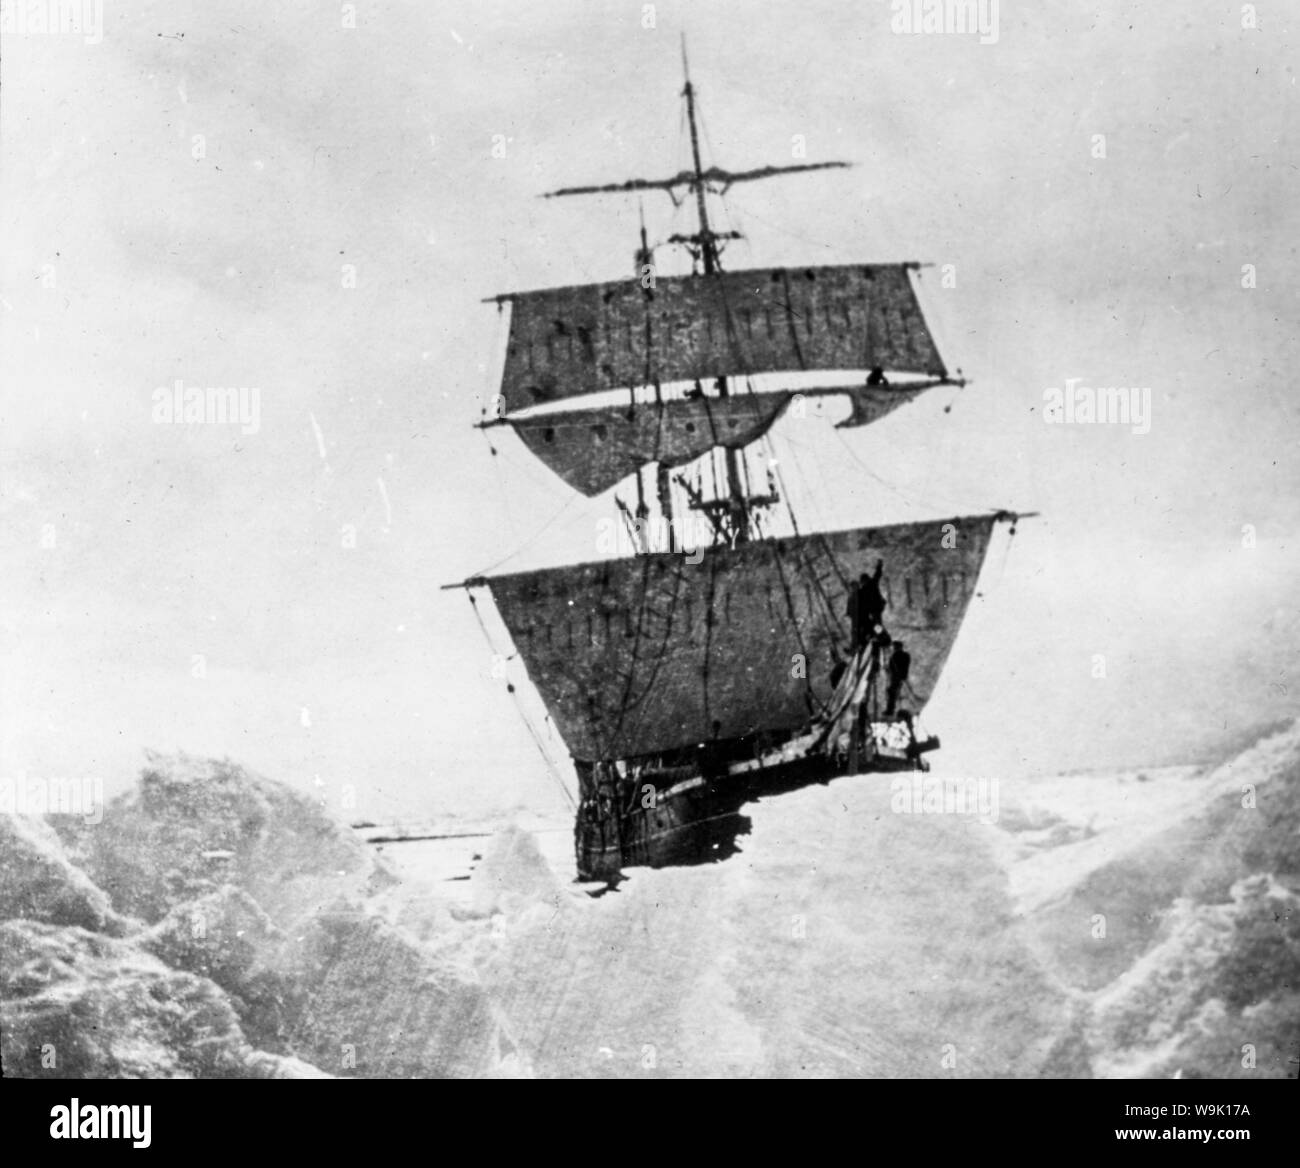 Die Nimrod Ernest Shackleton's Schiff im Eis gehalten auf der British Antarctic Expedition zum Südpol in 1908-1909, Foto Stockfoto